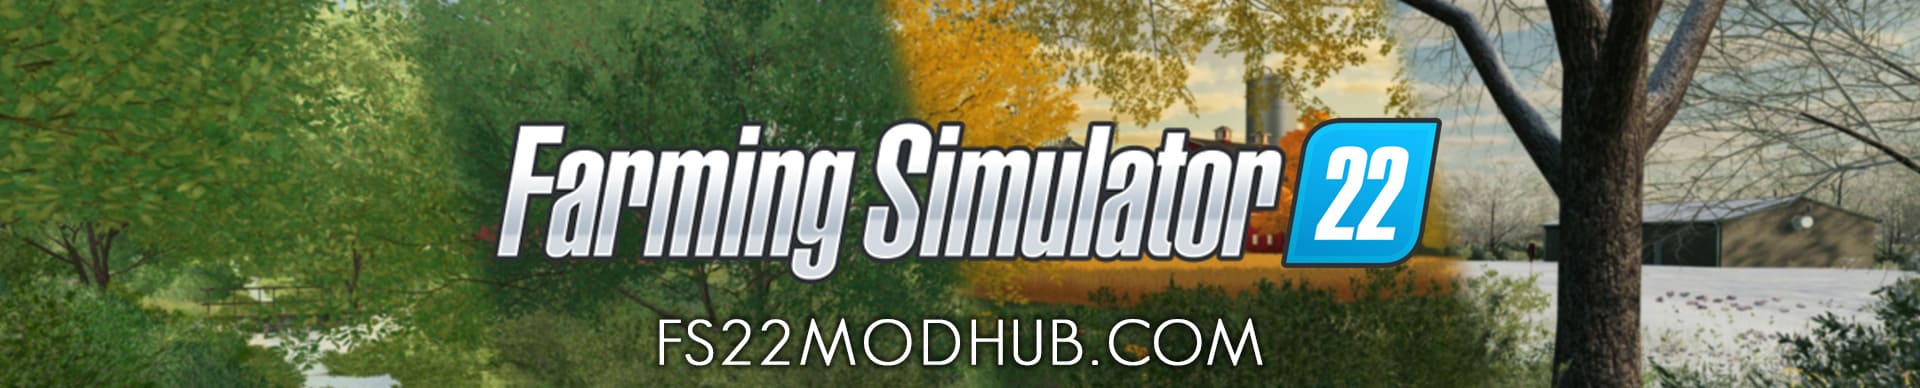 Farming Simulator 22 FAQ